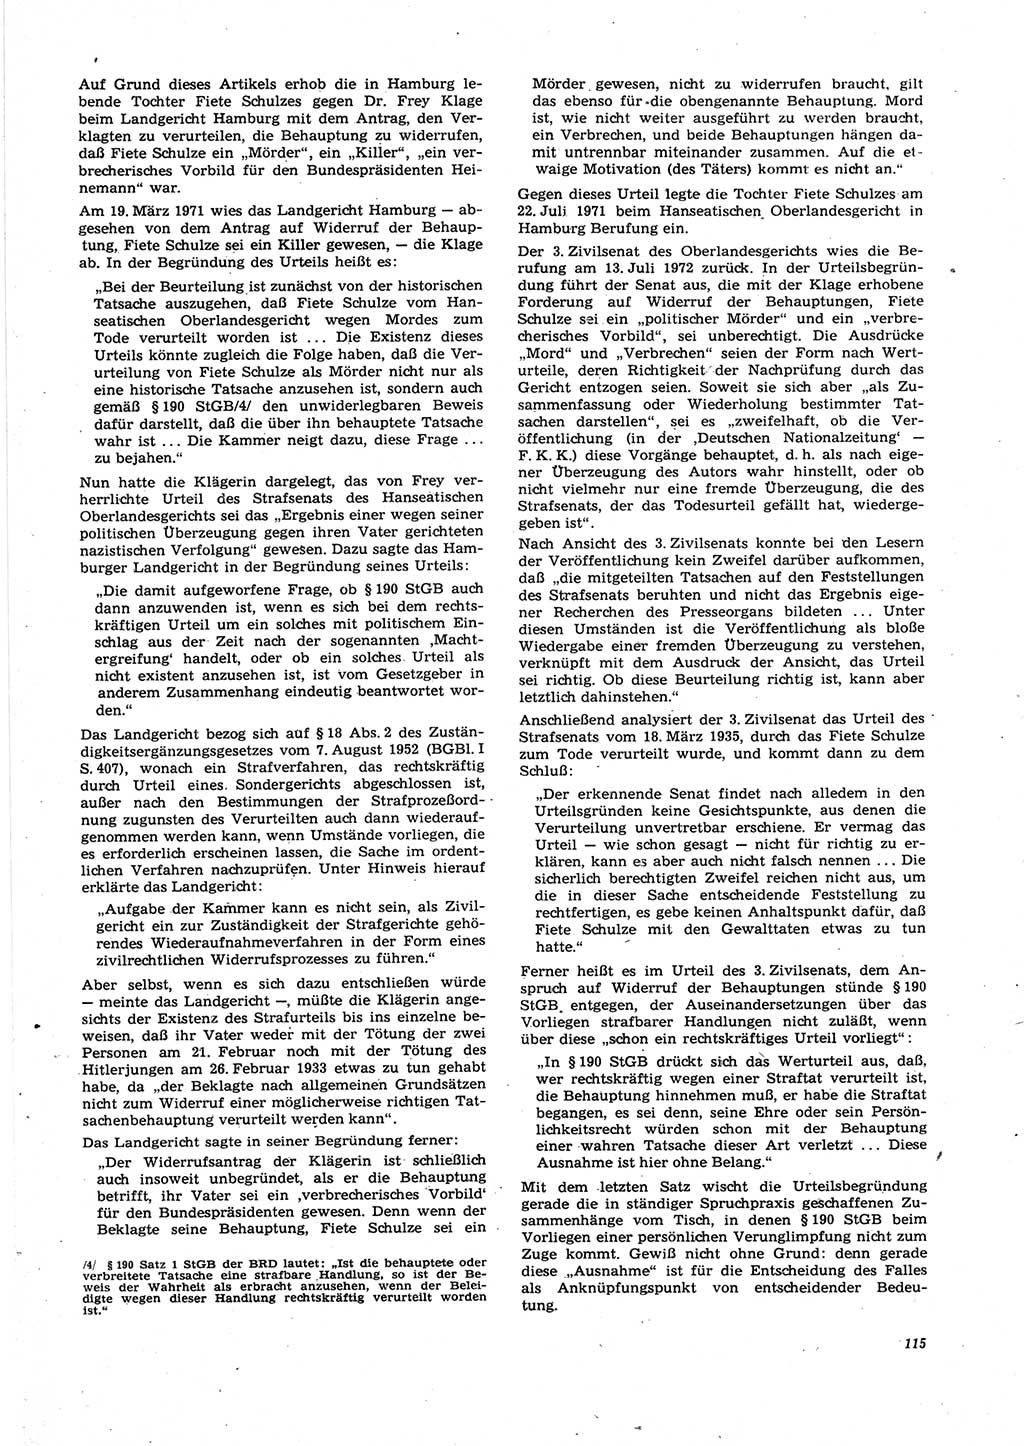 Neue Justiz (NJ), Zeitschrift für Recht und Rechtswissenschaft [Deutsche Demokratische Republik (DDR)], 27. Jahrgang 1973, Seite 115 (NJ DDR 1973, S. 115)